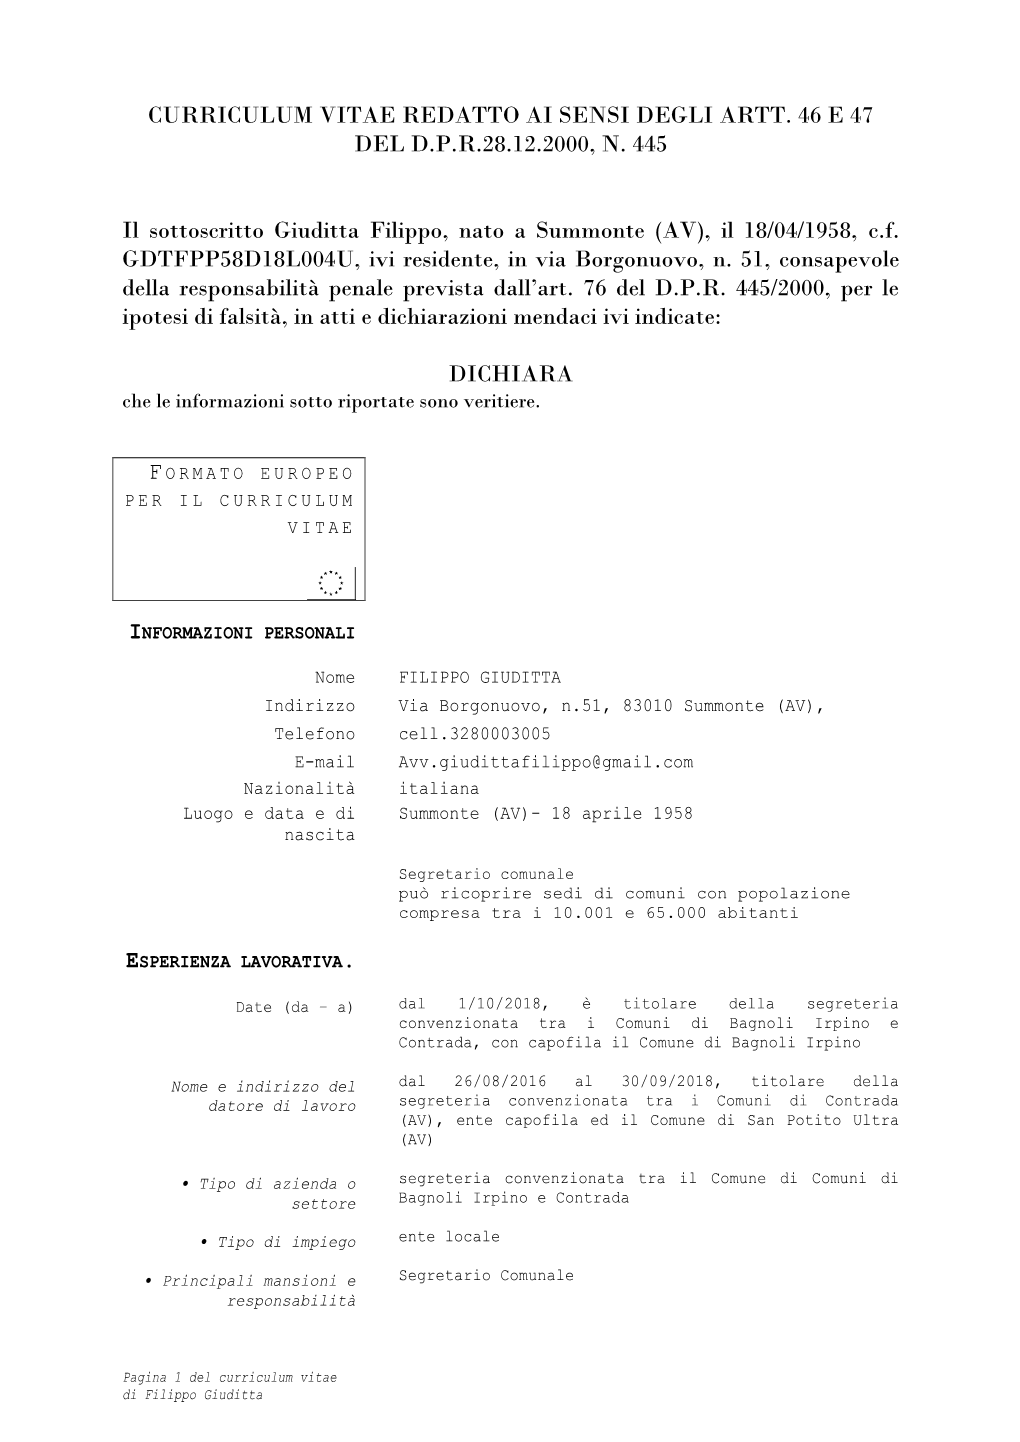 Curriculum Vitae Redatto Ai Sensi Degli Artt. 46 E 47 Del D.P.R.28.12.2000, N